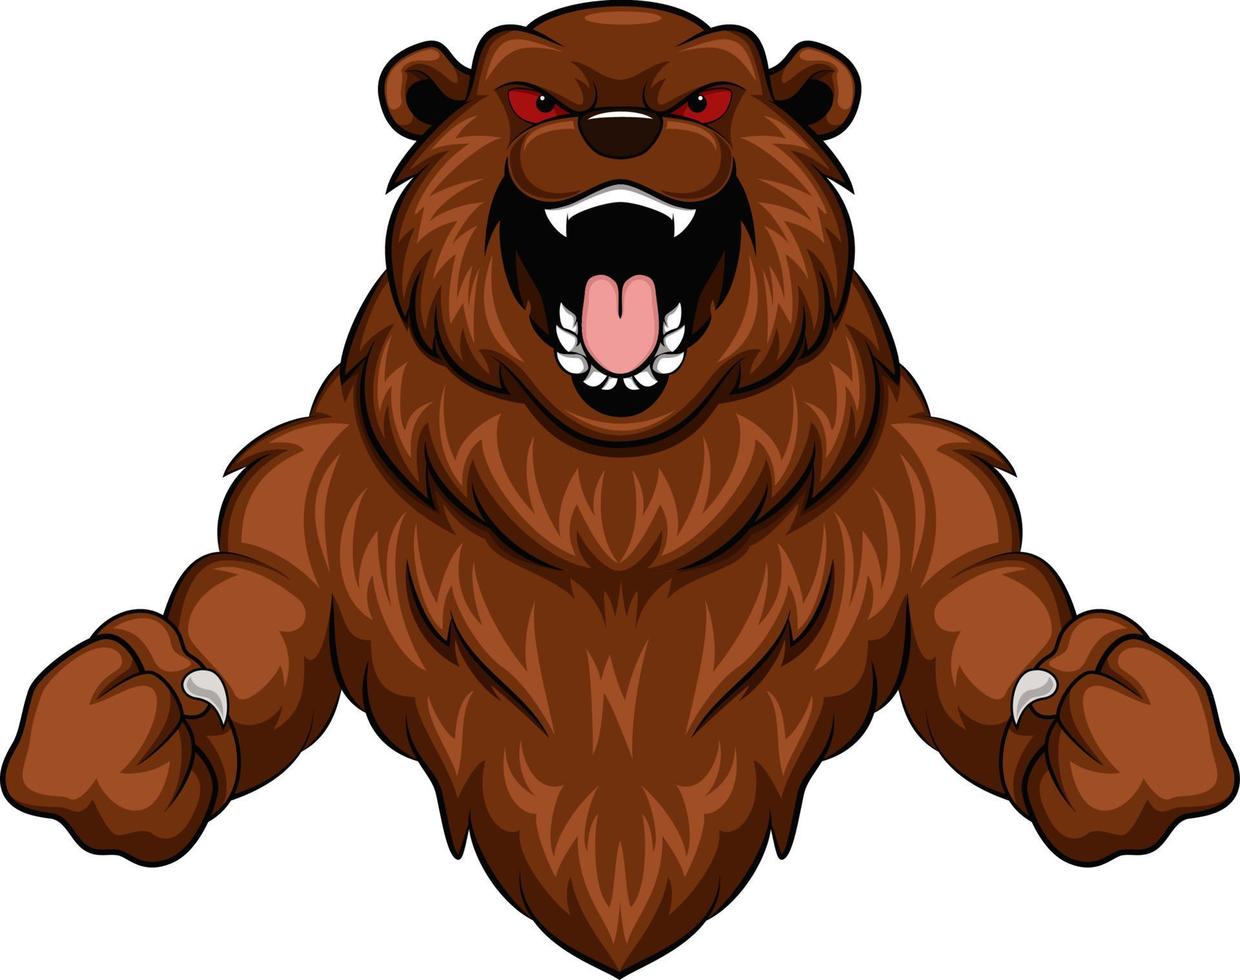 Angry bear cartoon mascot character vector